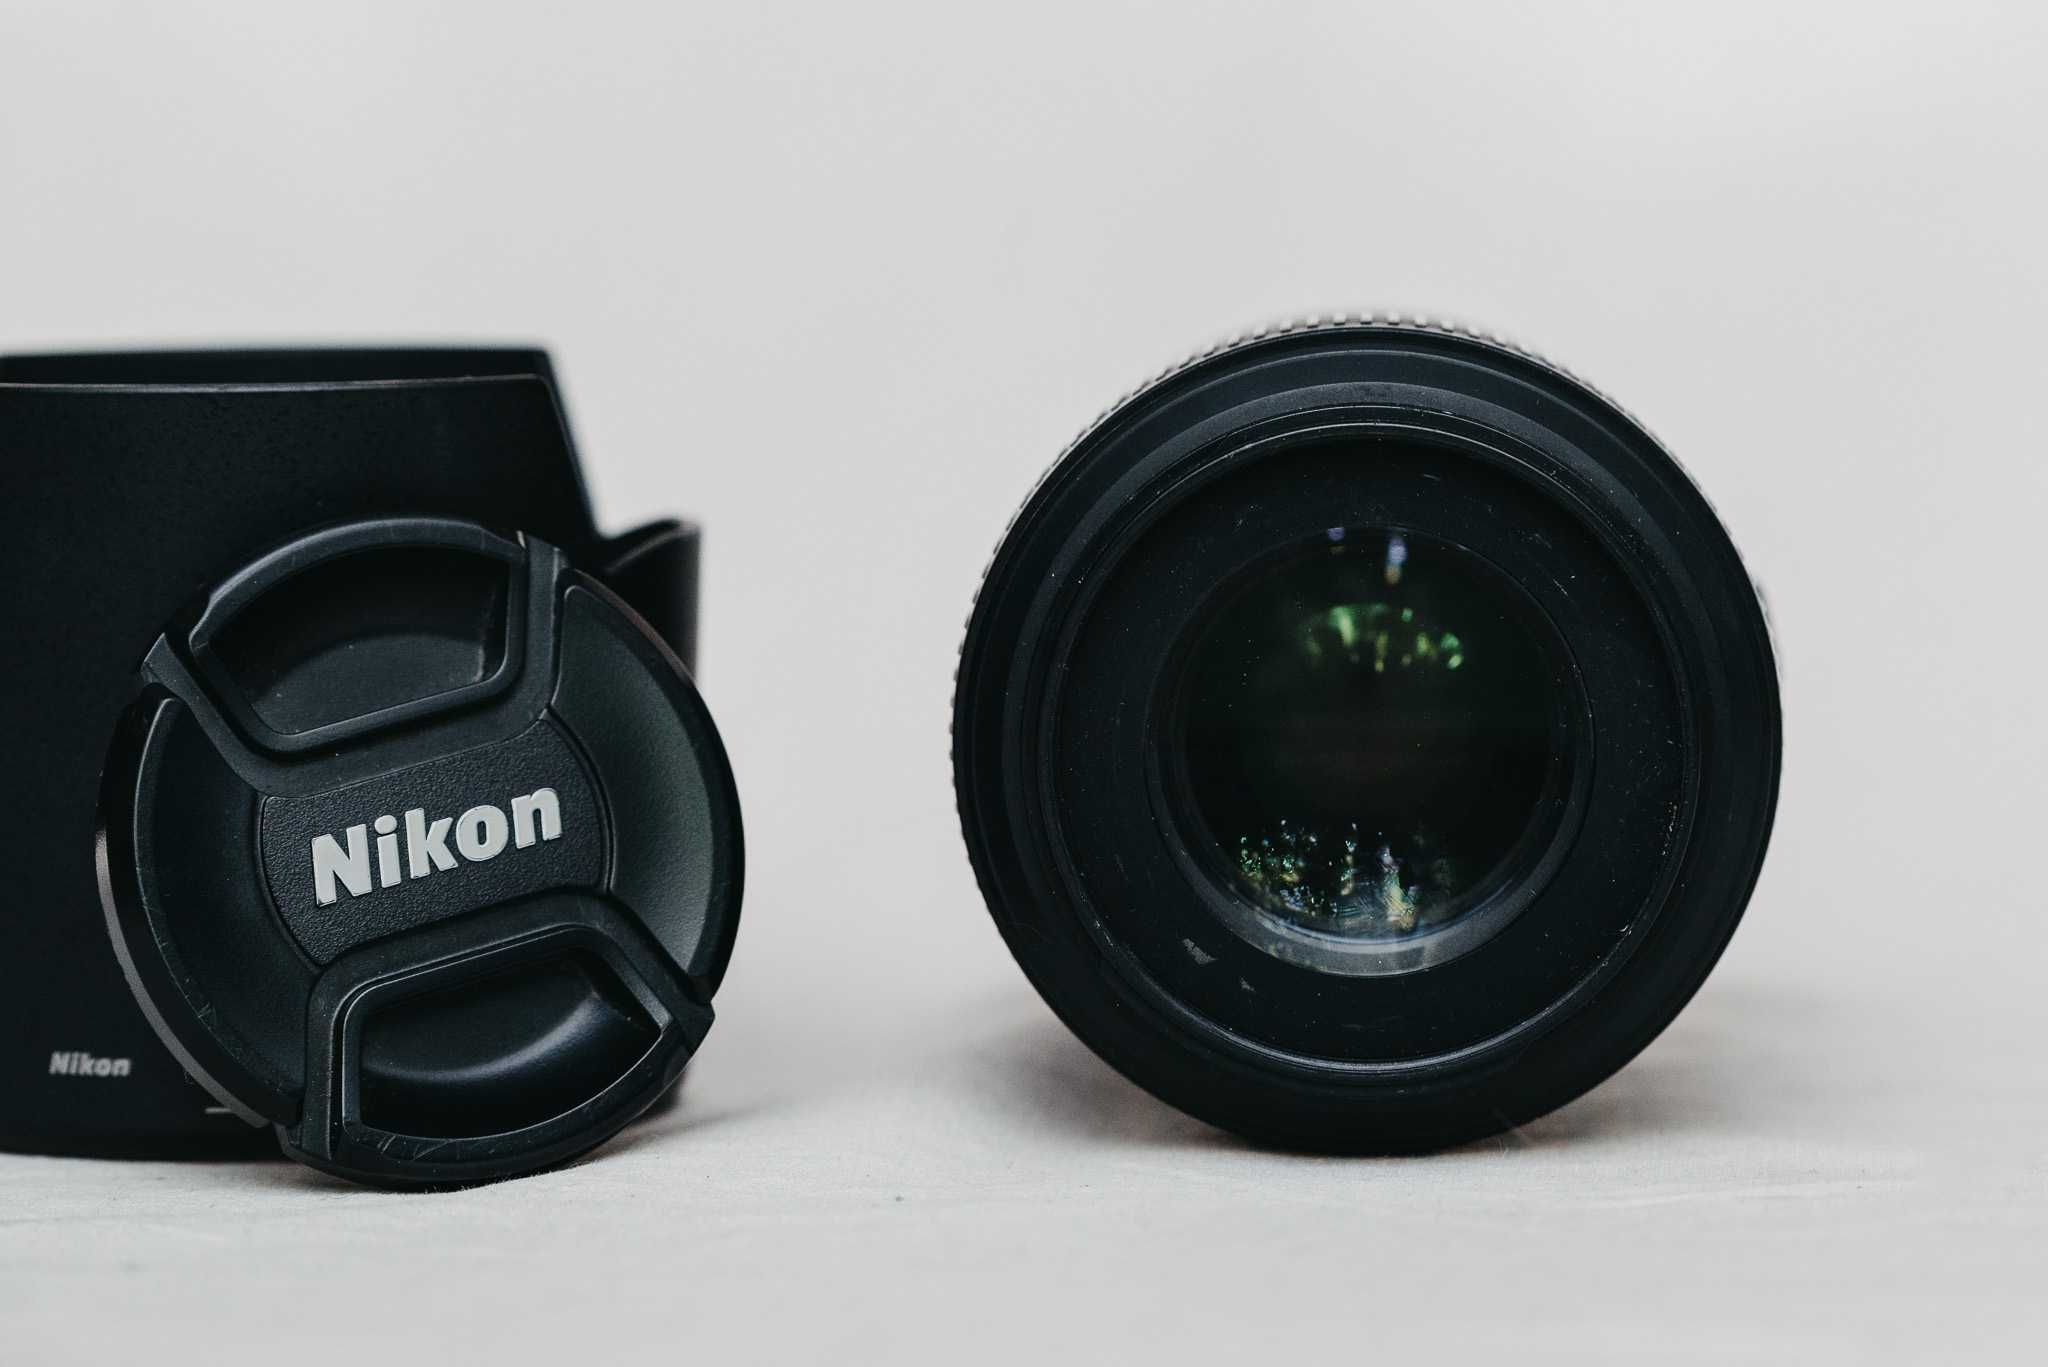 Obiektyw Nikkor MICRO 105mm f/2.8 G ED - Idealny do Makrofotografii!